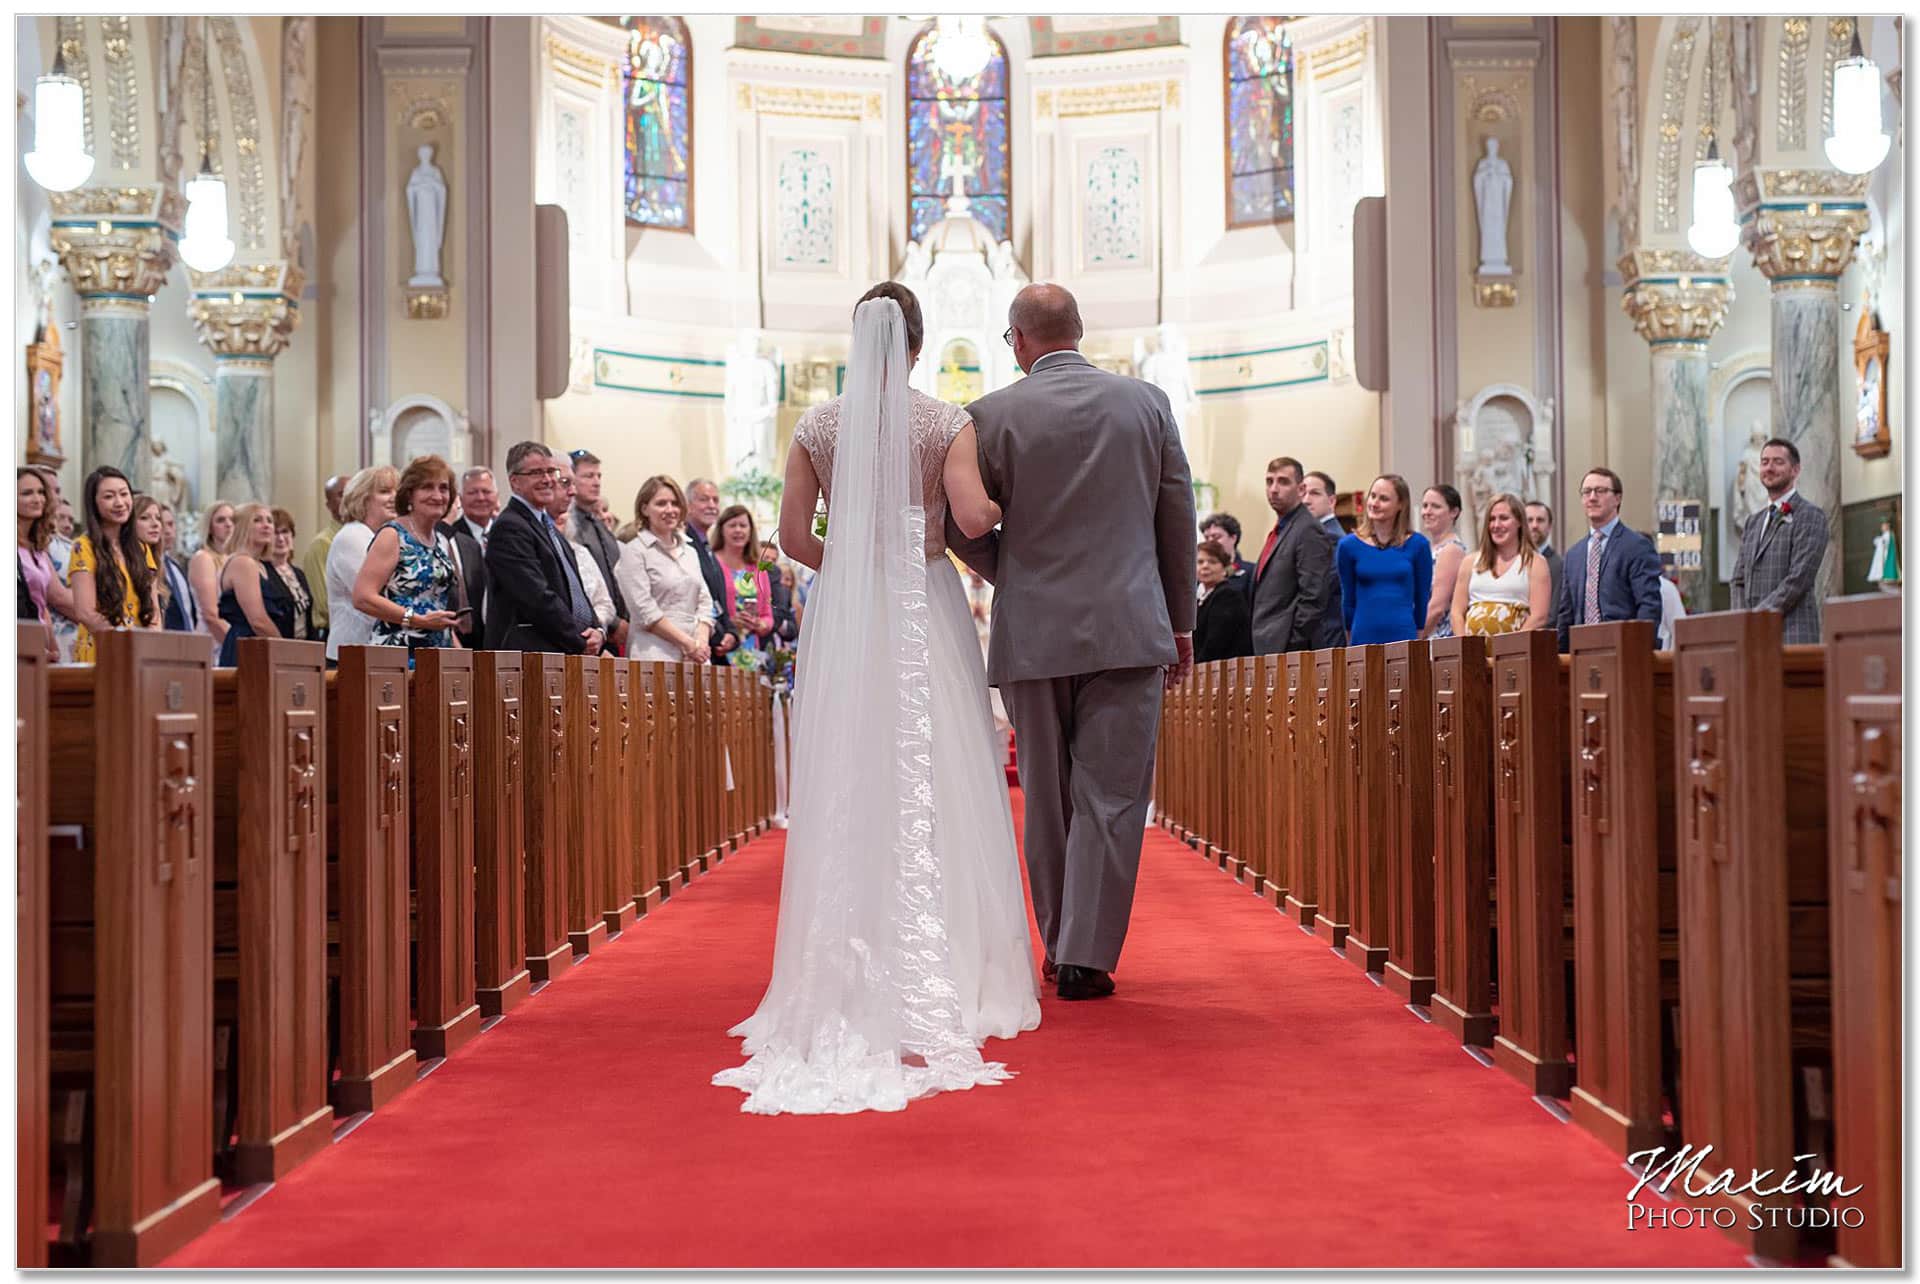 Joseph Catholic Church Dayton Wedding Ceremony